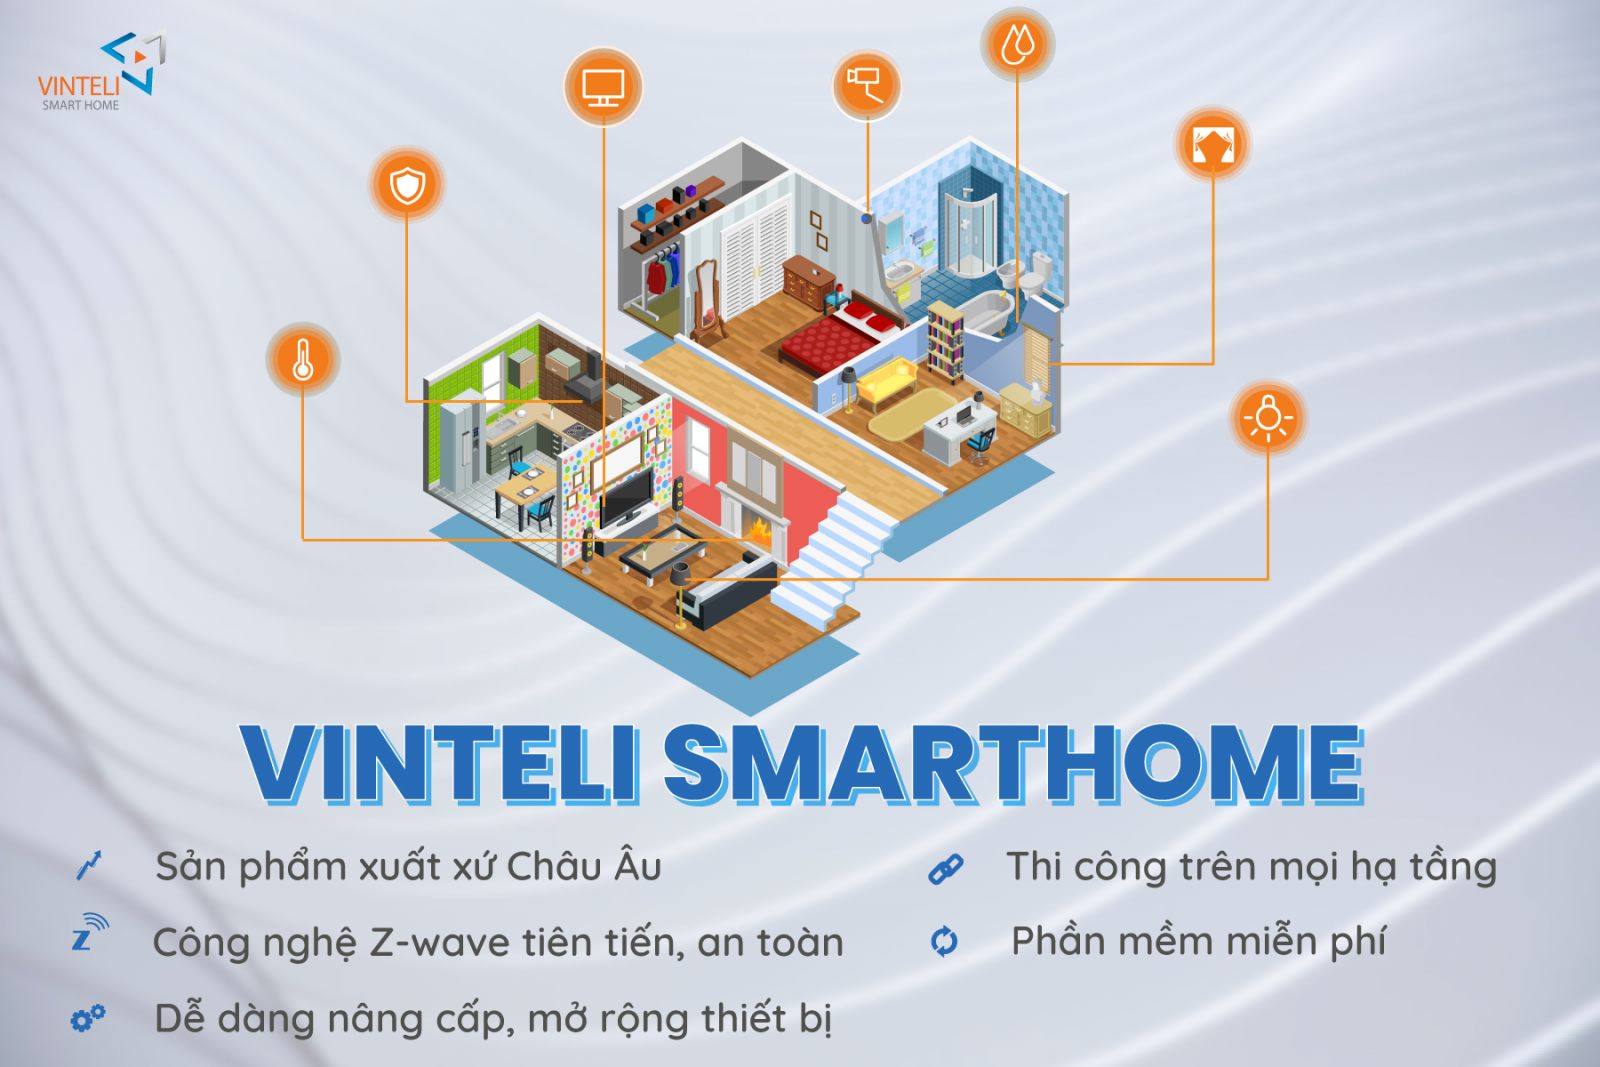 Vinteli Smarthome - Giải pháp hoàn hảo cho ngôi nhà thông minh của bạn